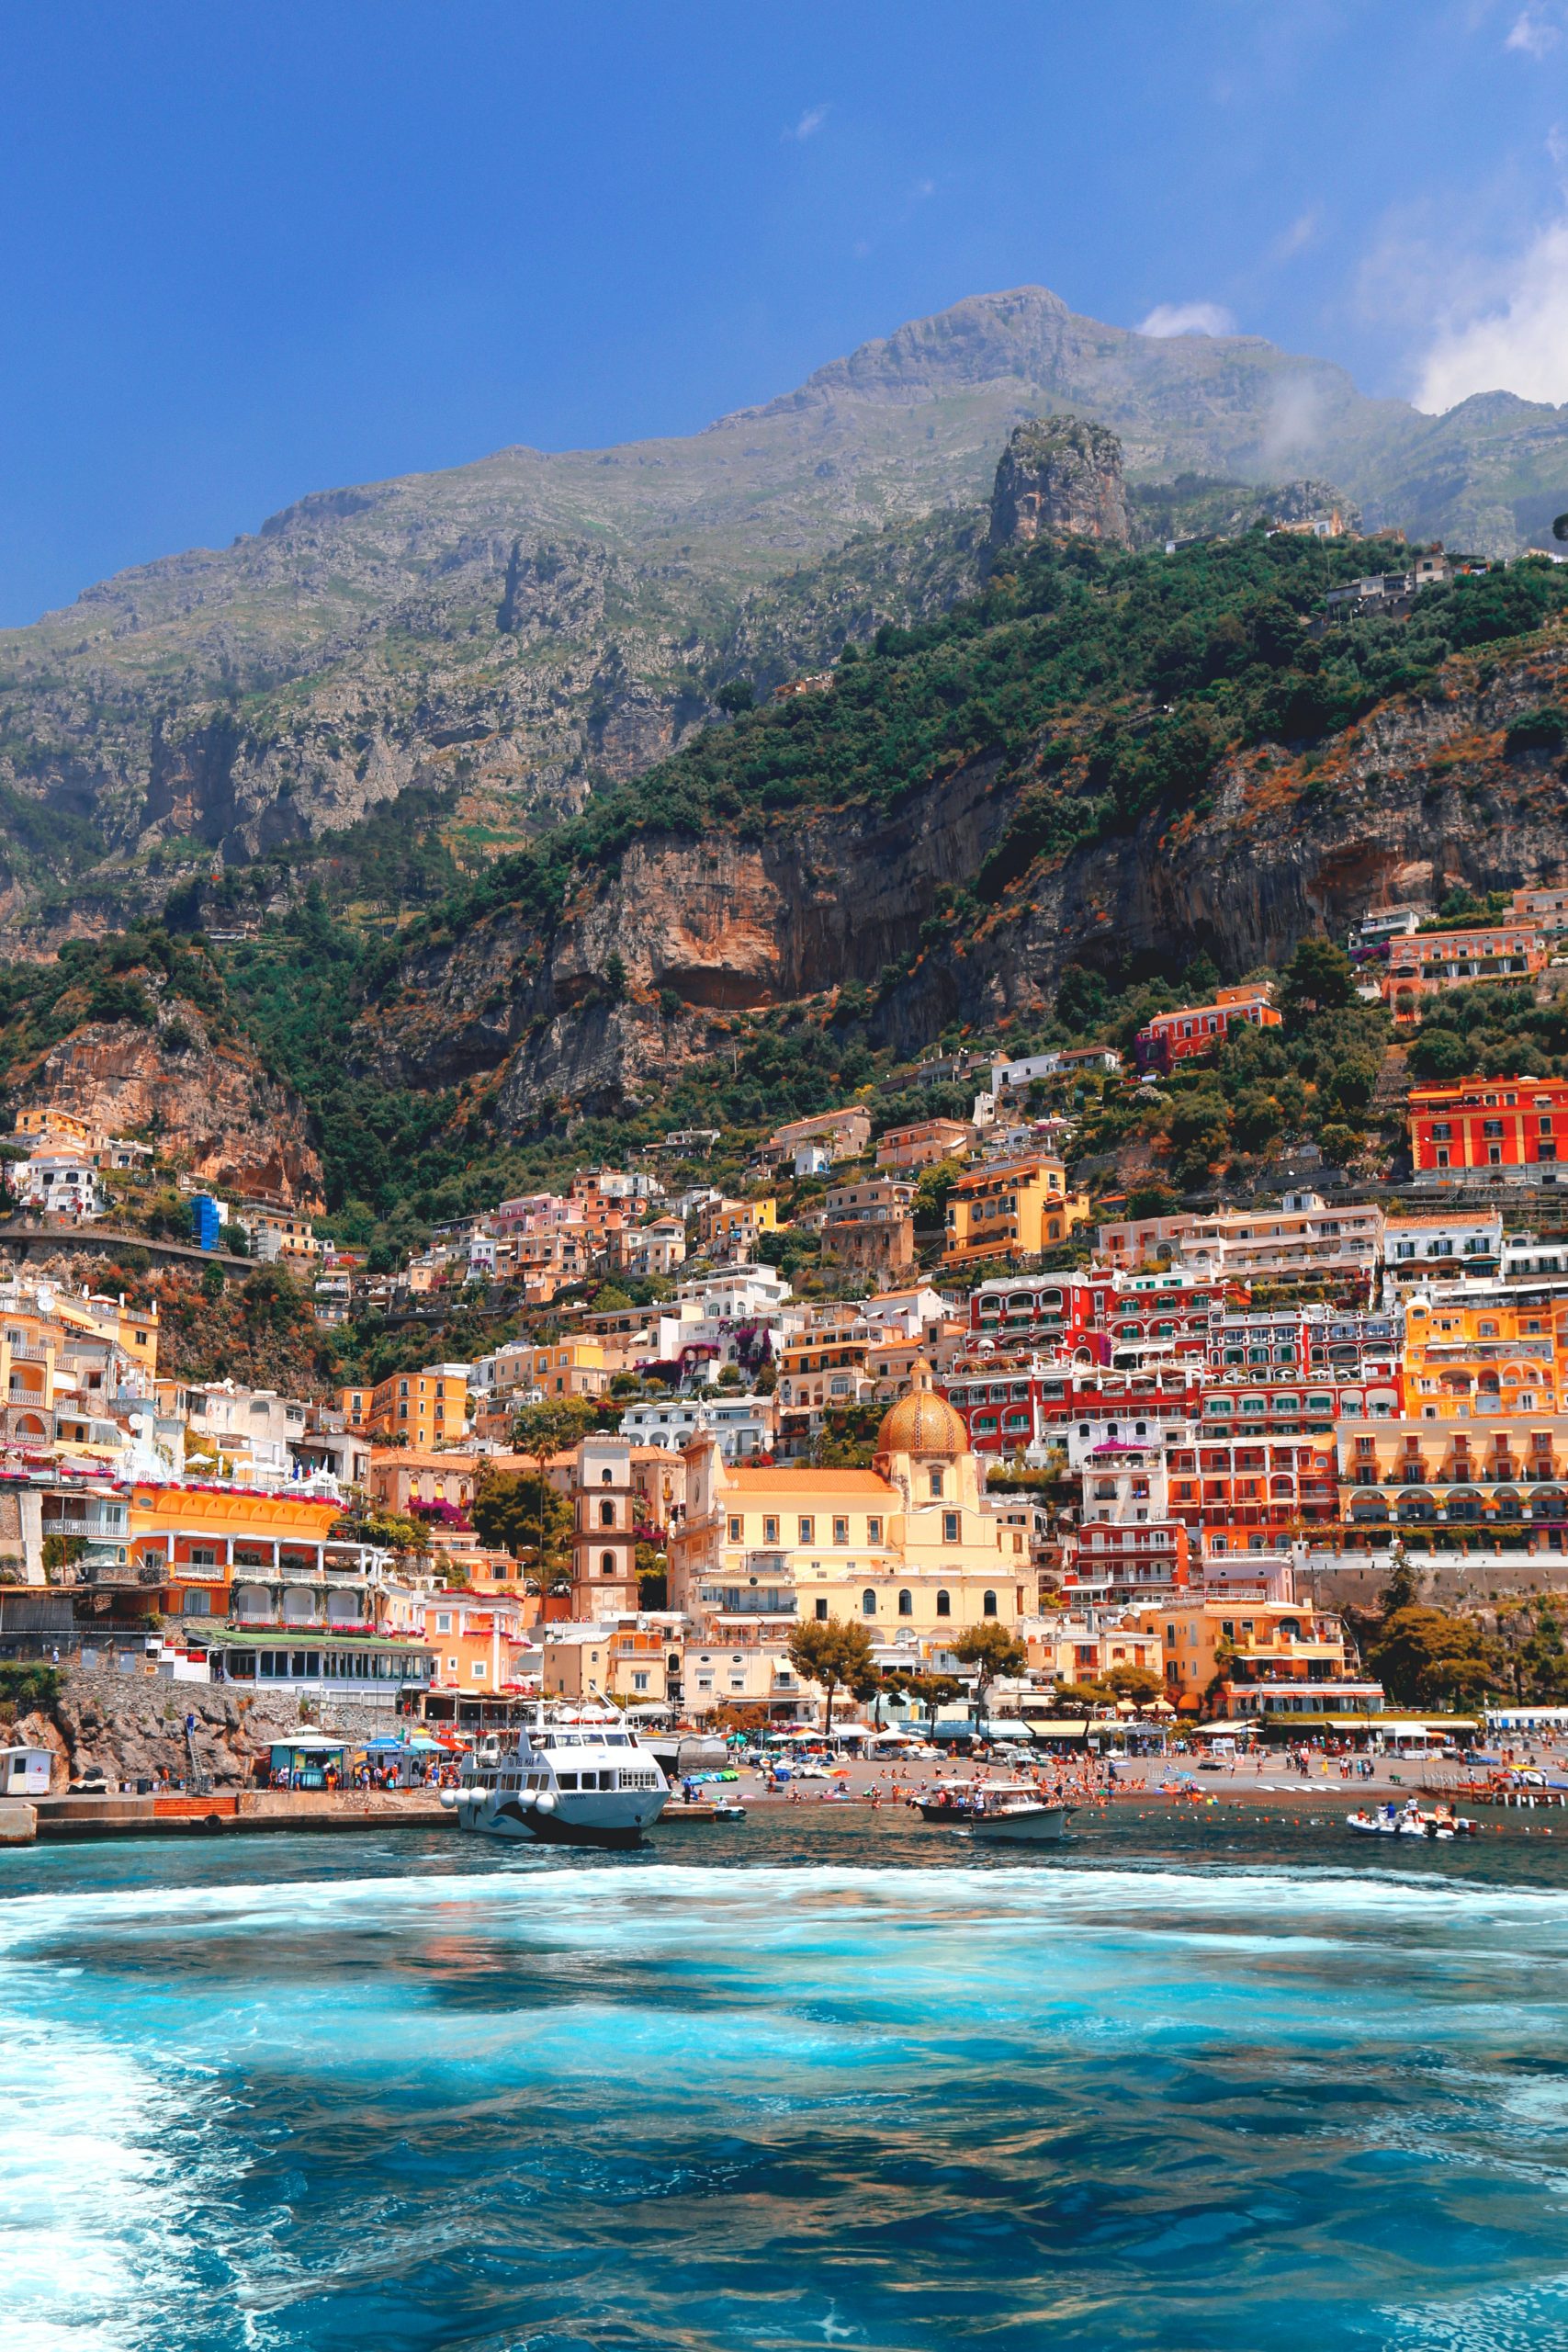 The South, the Sea, and the Amalfi Coast